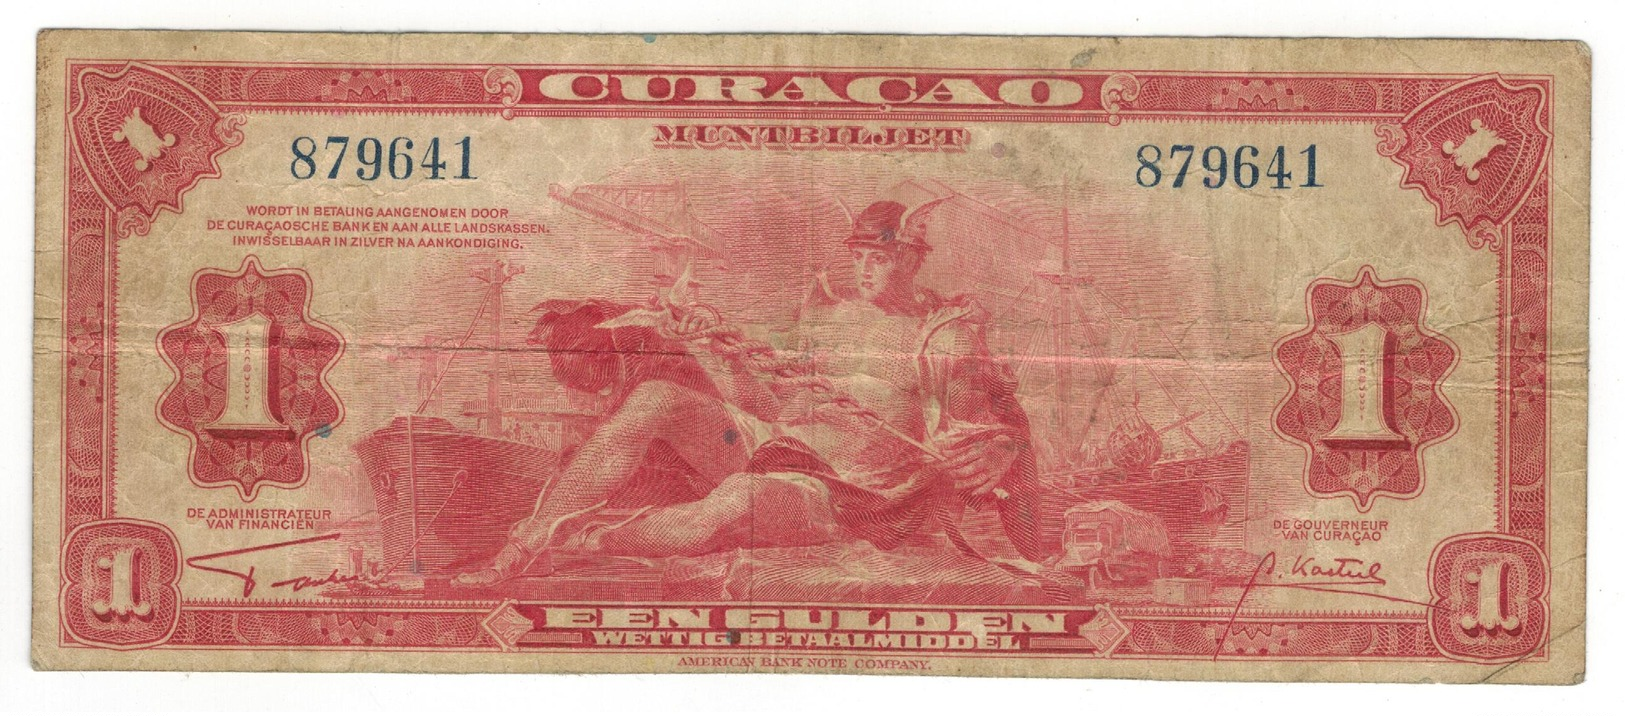 Curacao, 1 Gulden 1942, F+. - Netherlands Antilles (...-1986)